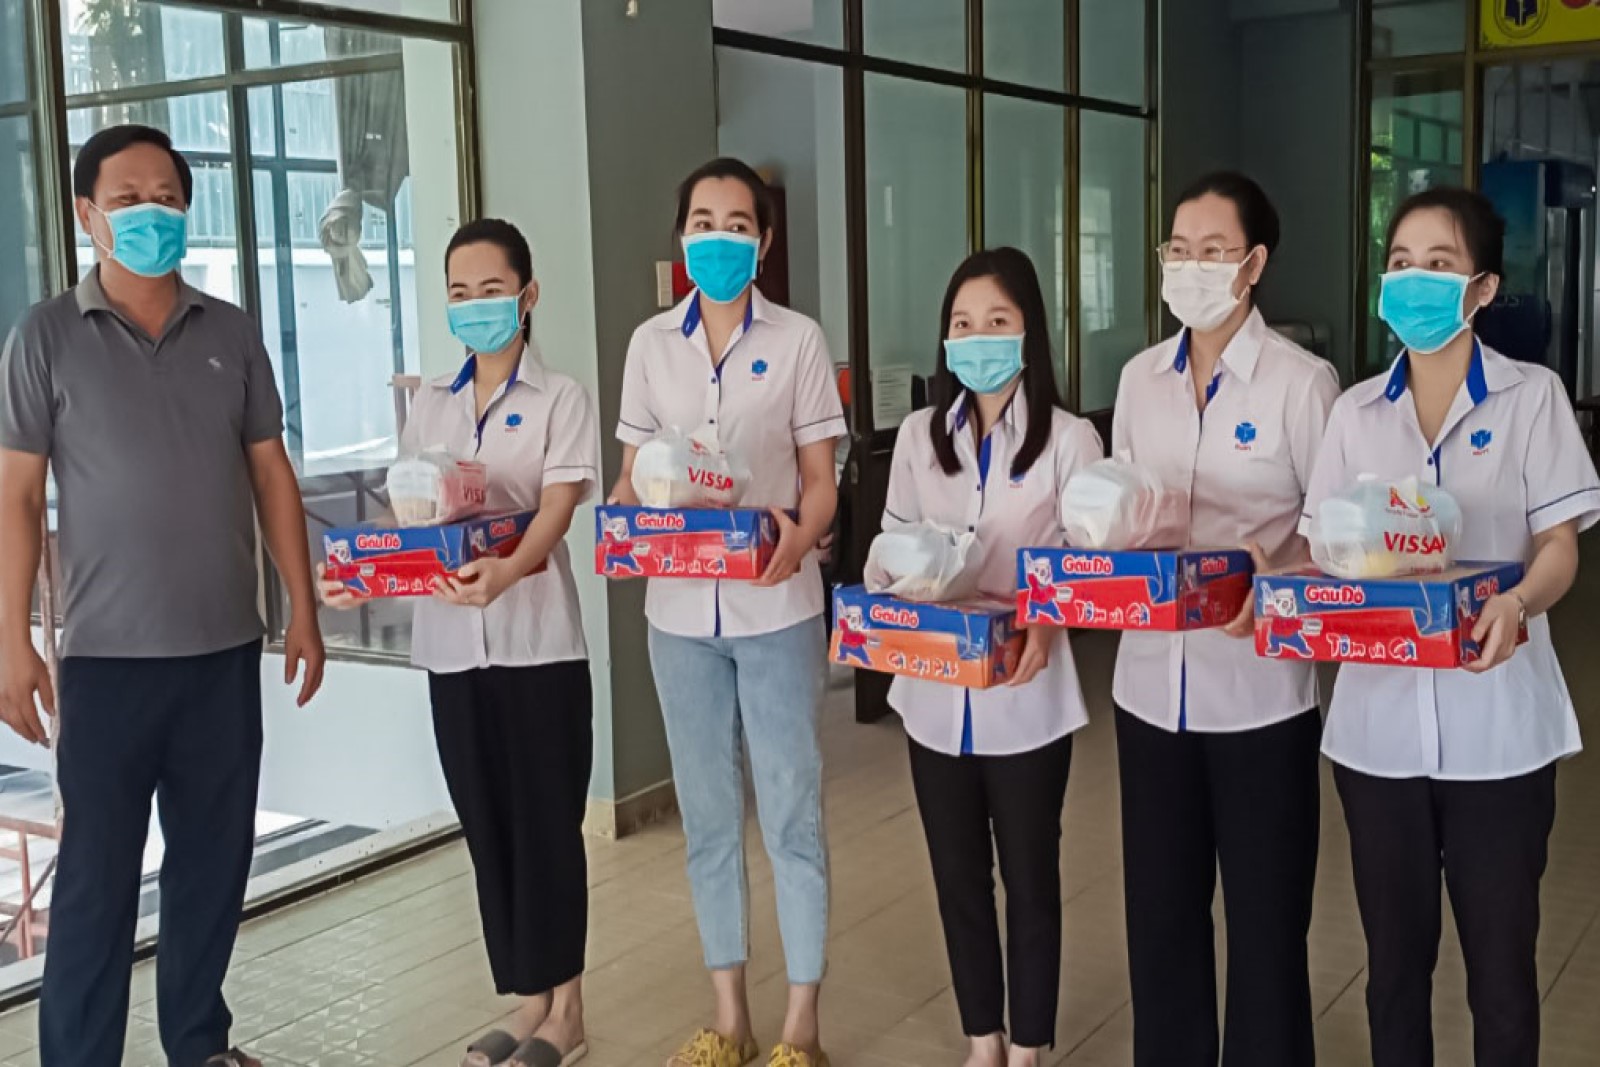 Đại học HUFI - Chung tay hỗ trợ sinh viên lưu trú tại ký túc xá